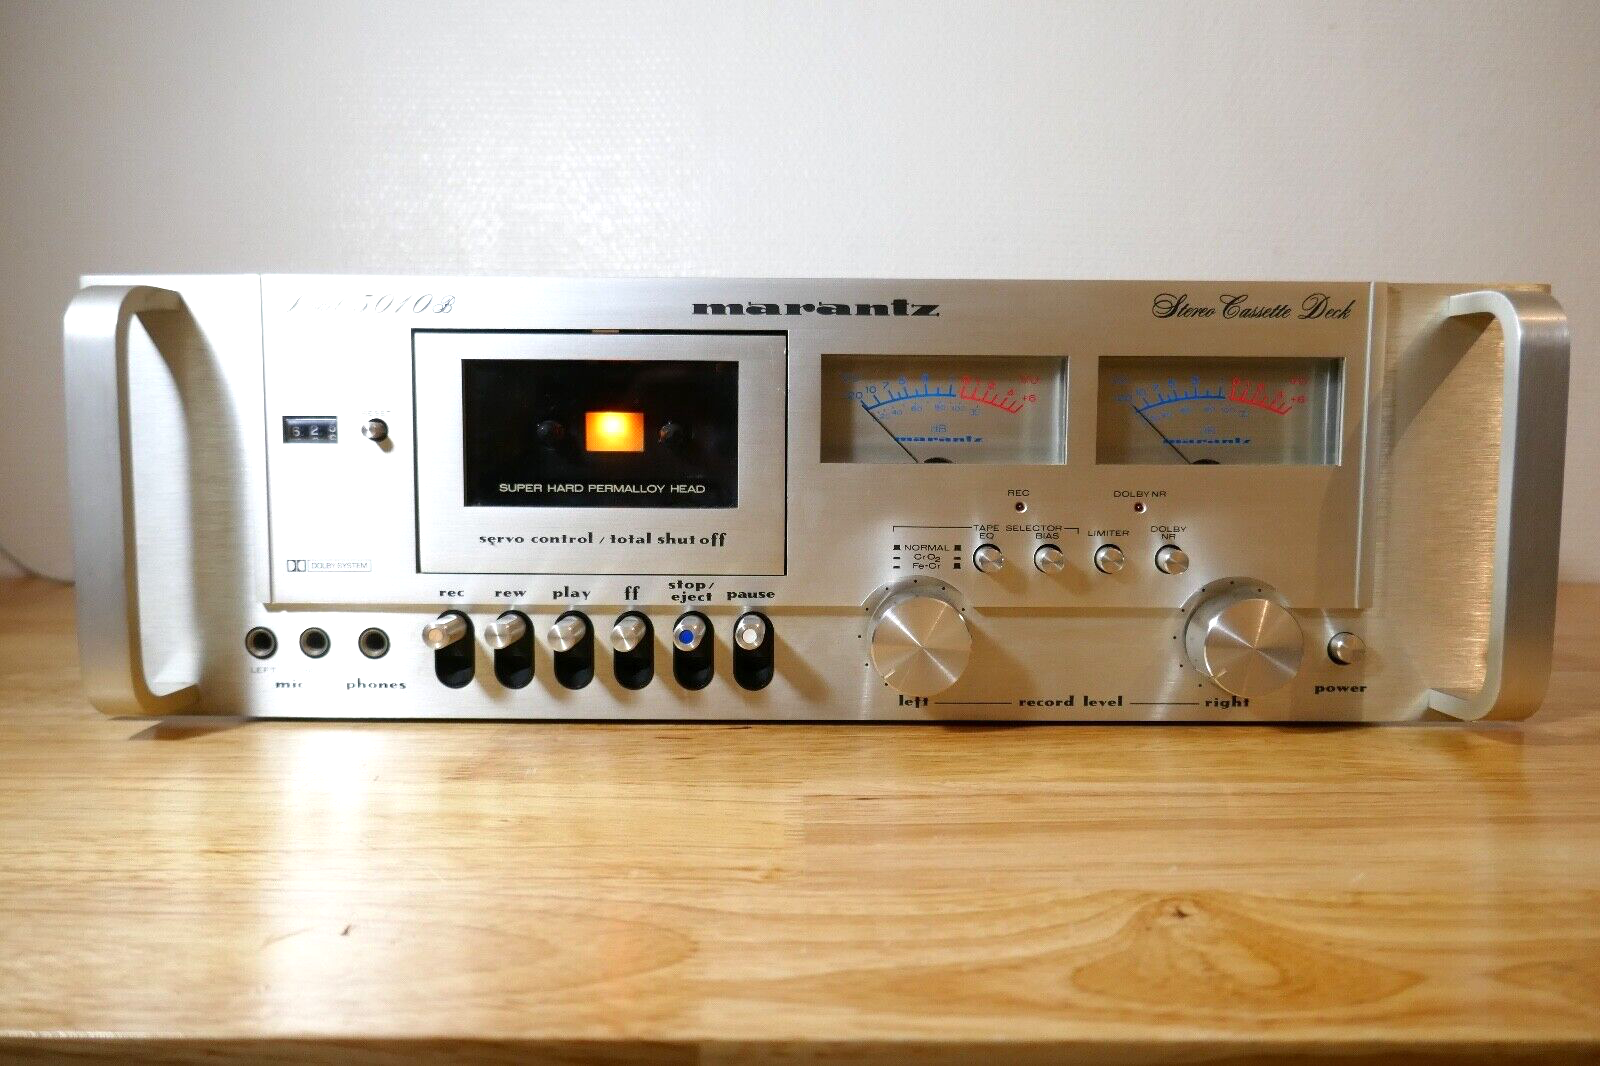 lecteur cassette tape deck marantz model 5010 b vintage occasion